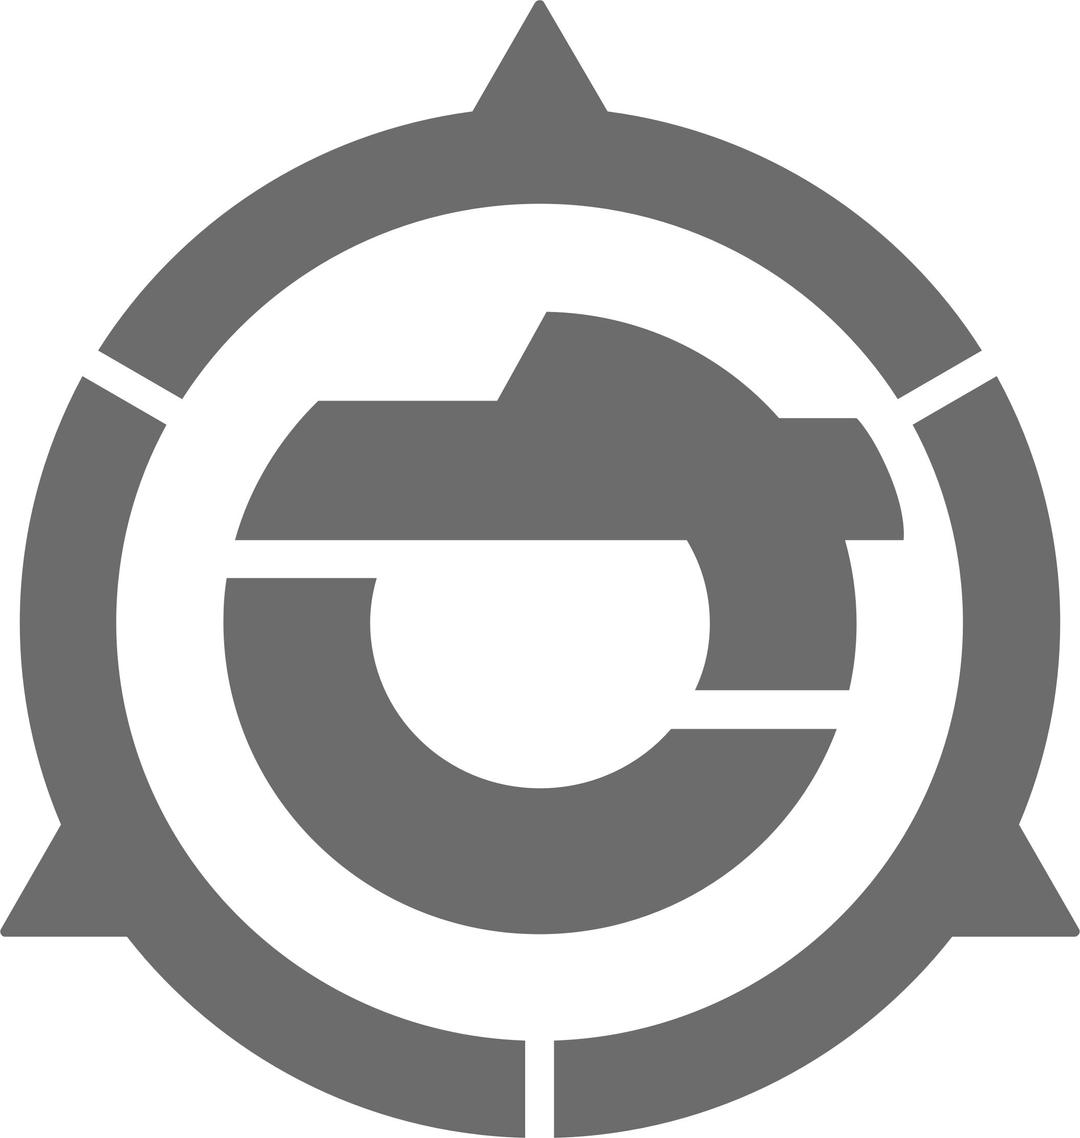 Satomi, Ibaraki chapter symbol/seal/emblem png transparent